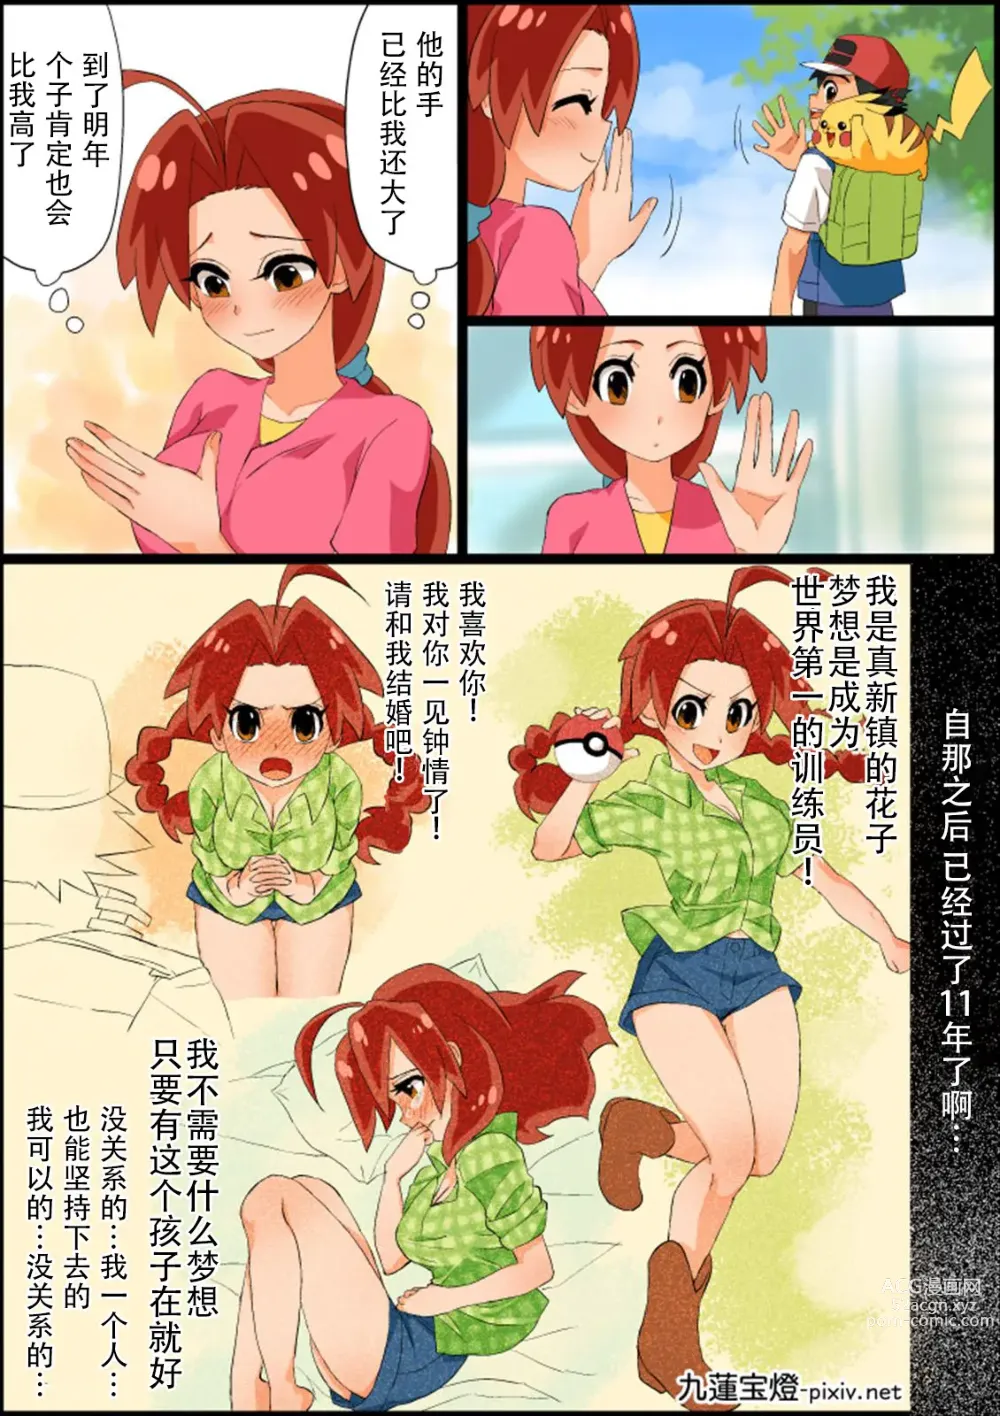 Page 4 of doujinshi SatoHana R18